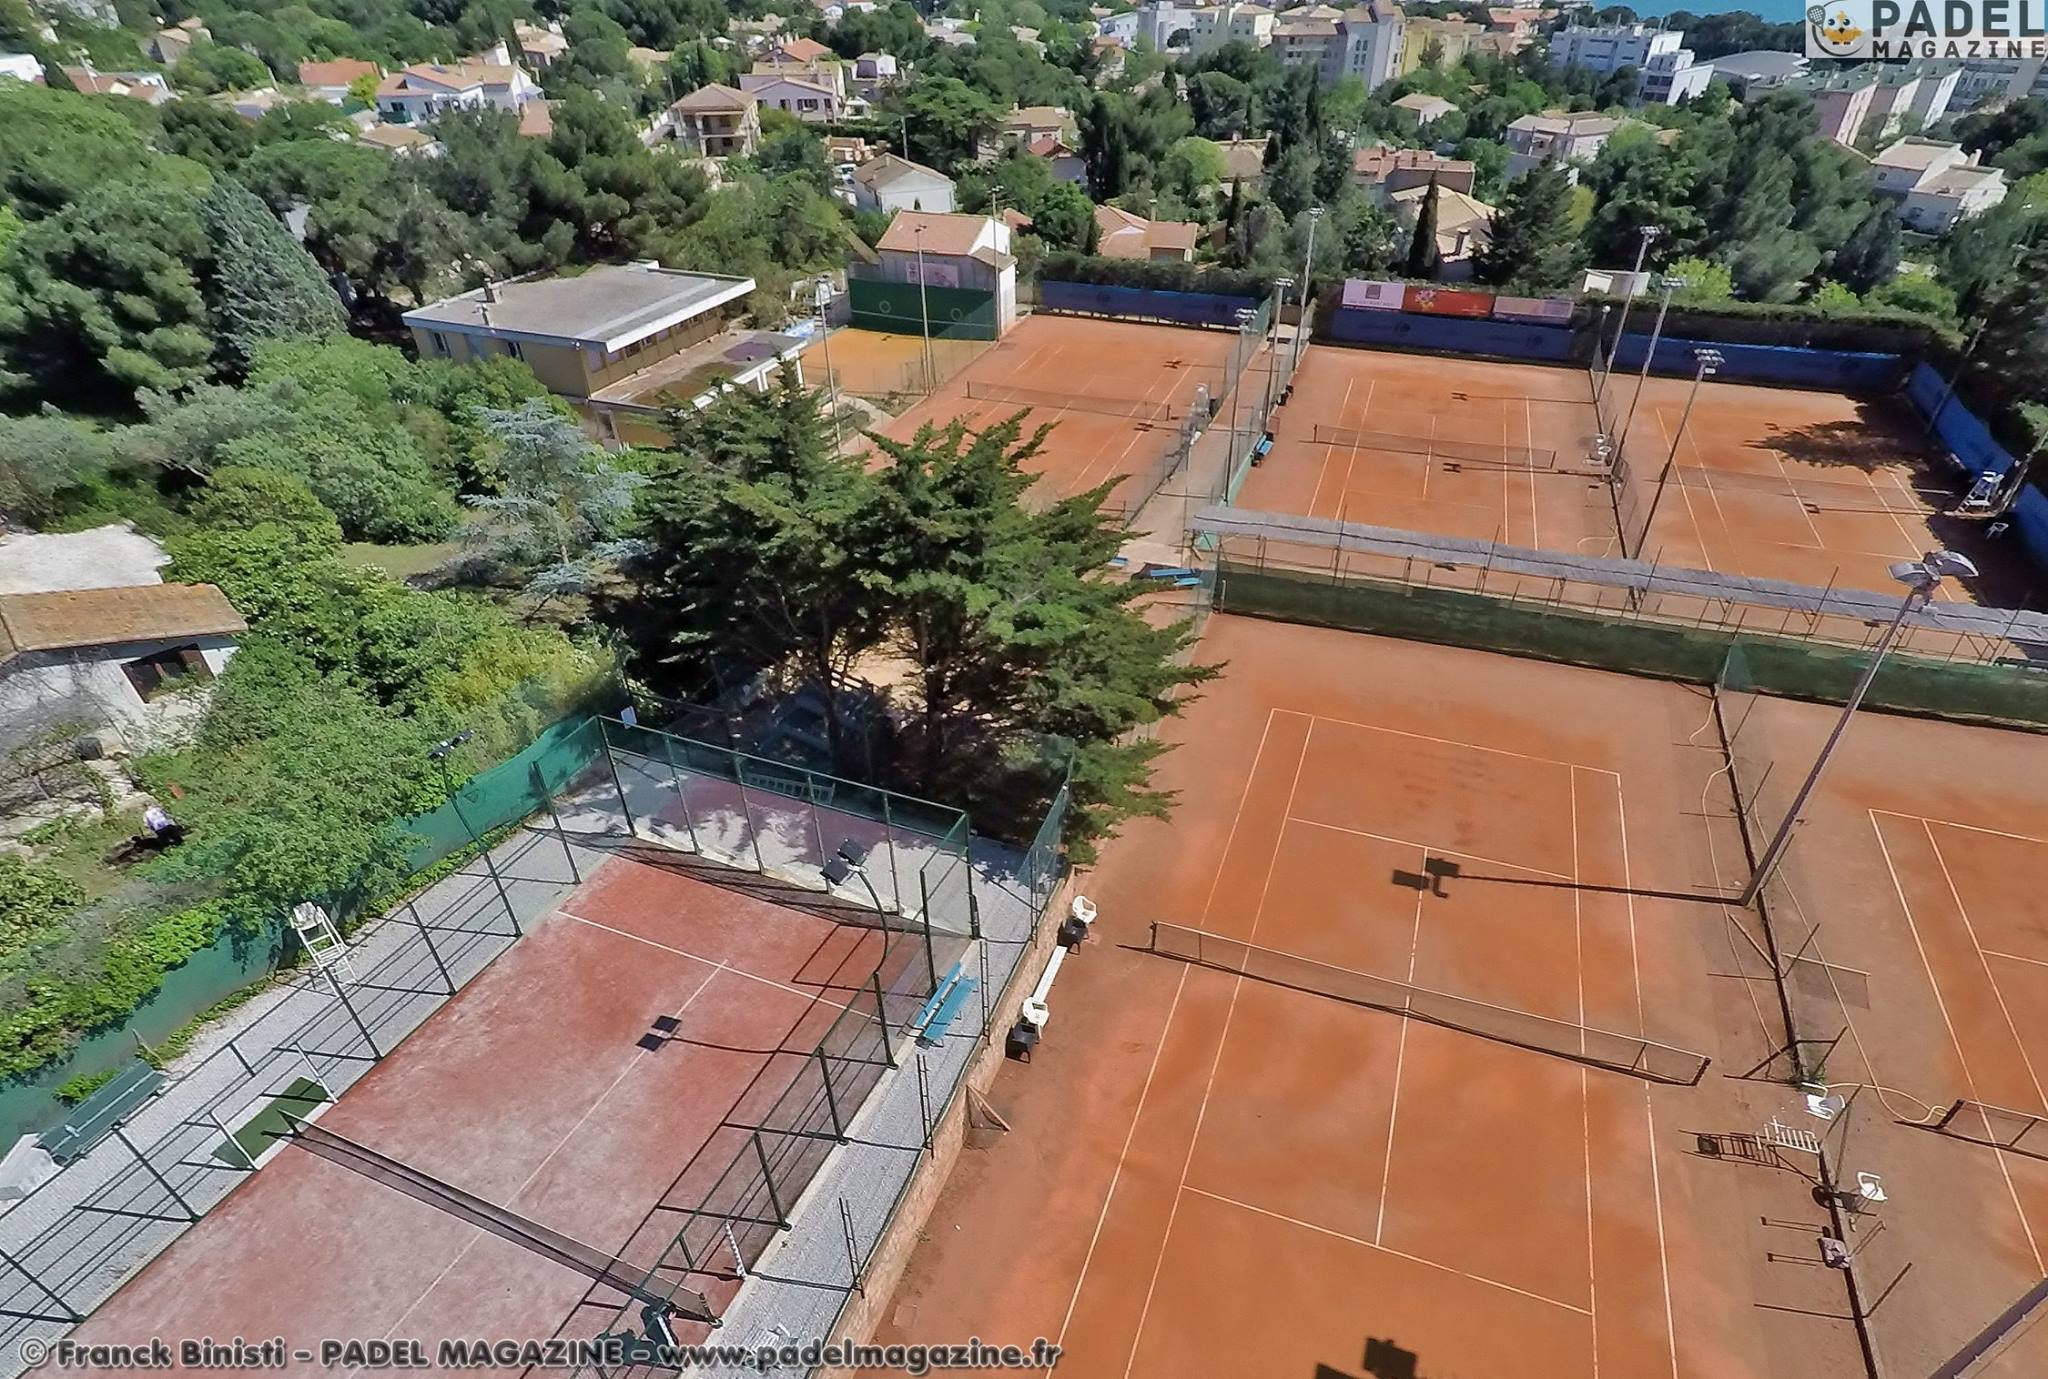 De Sète Tennis Club heeft de ambitie om meer te doen